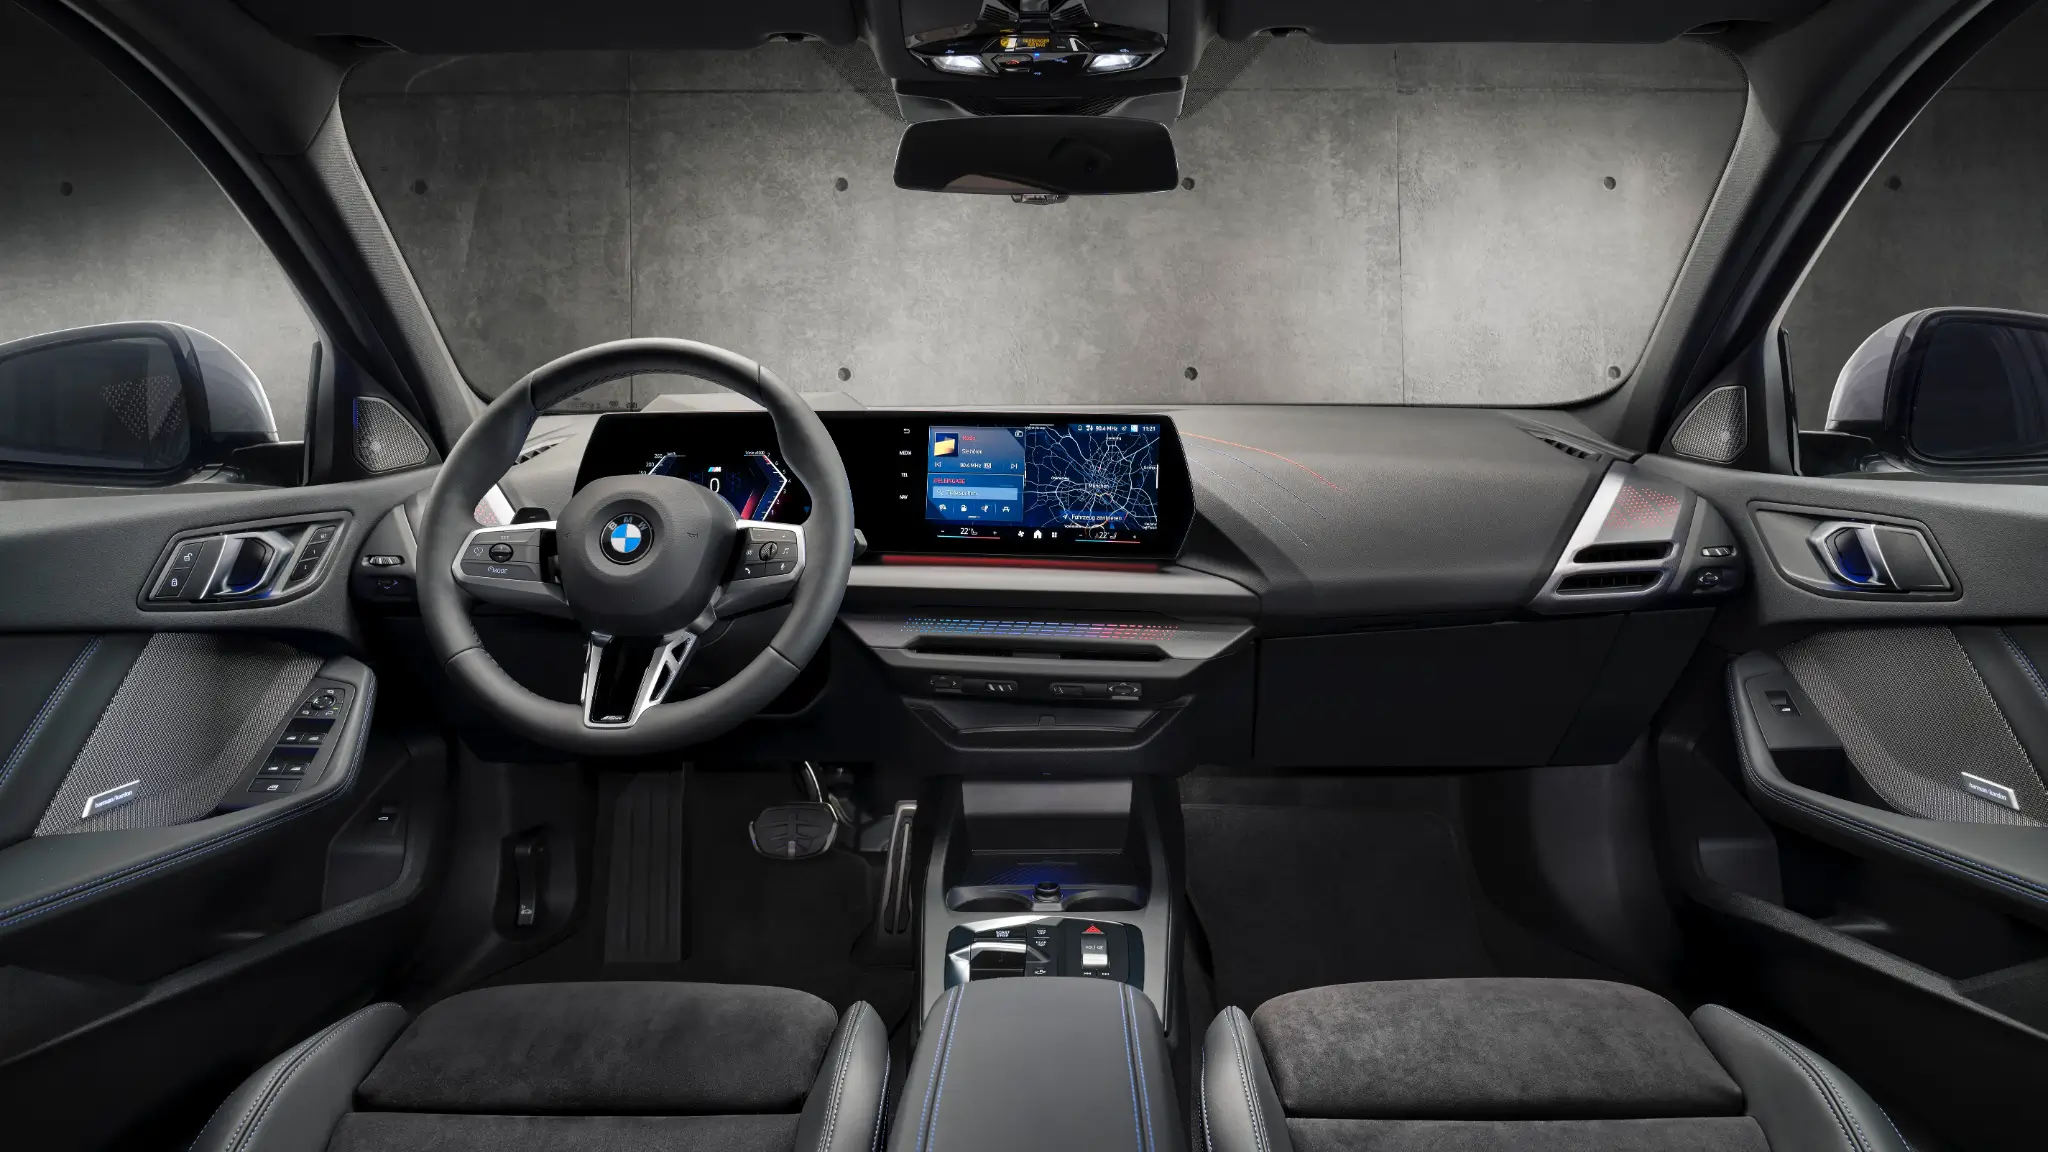 BMW Série 1 interior